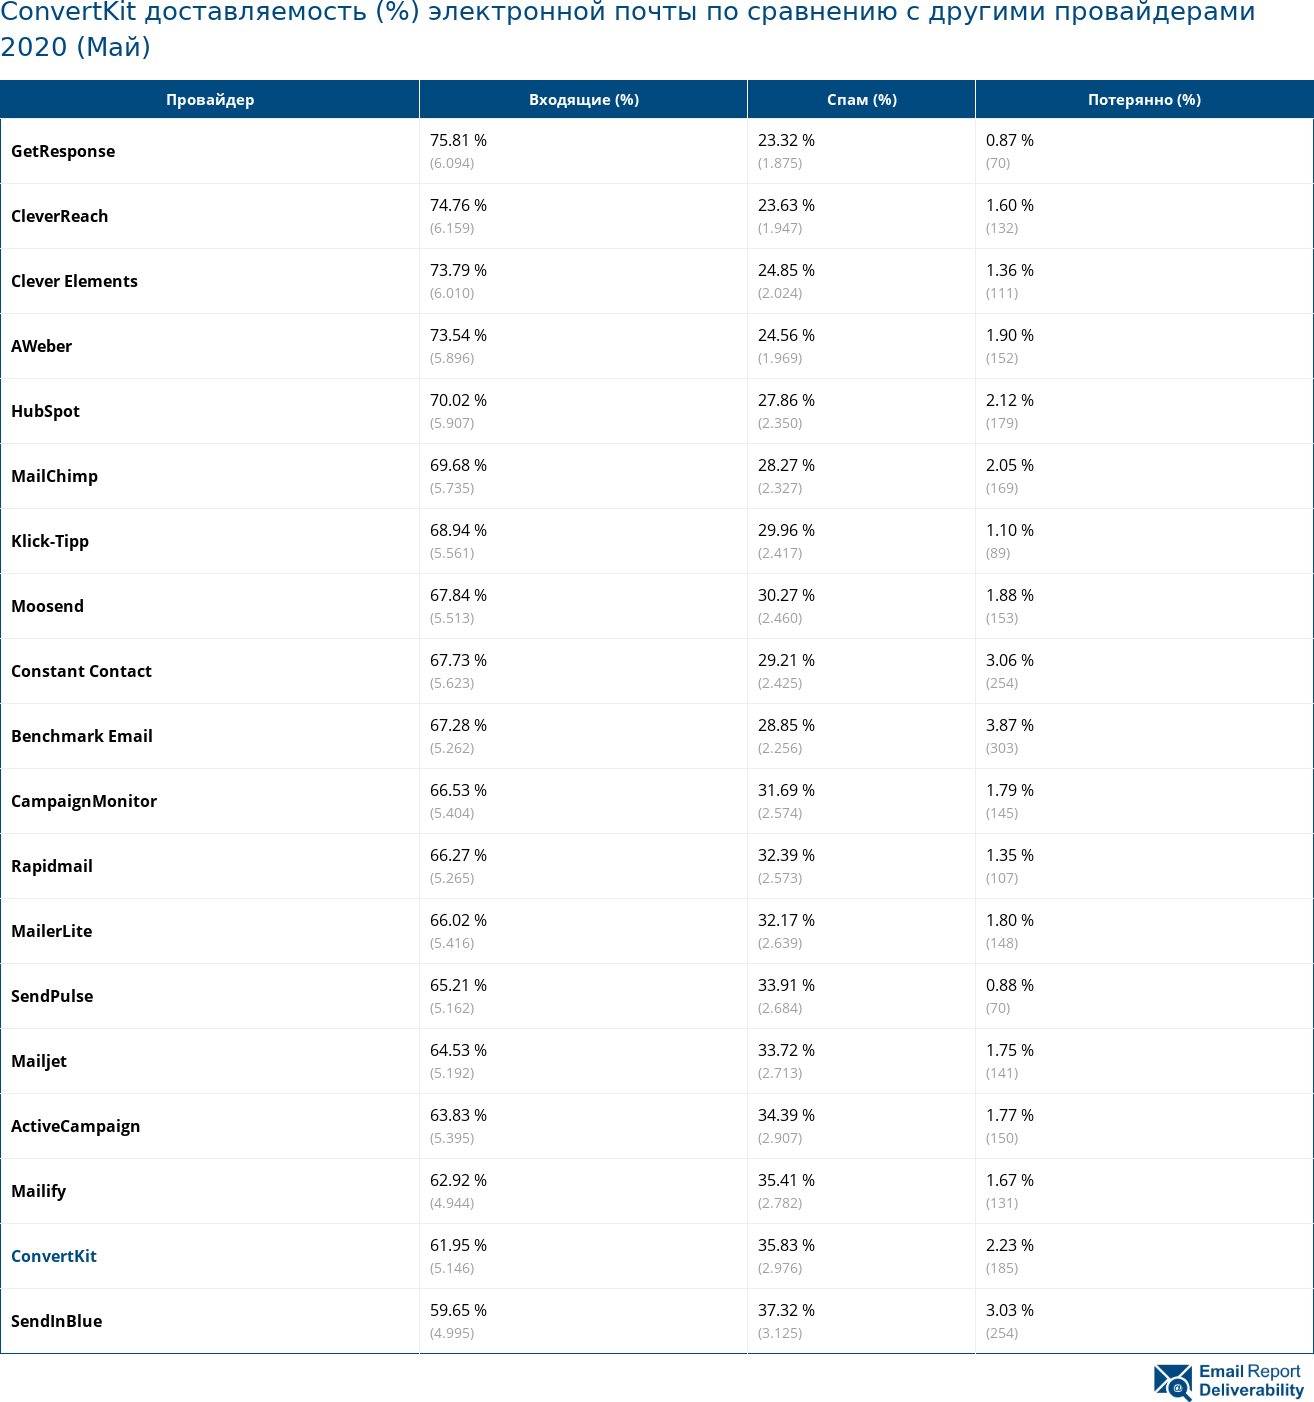 ConvertKit доставляемость (%) электронной почты по сравнению с другими провайдерами 2020 (Май)